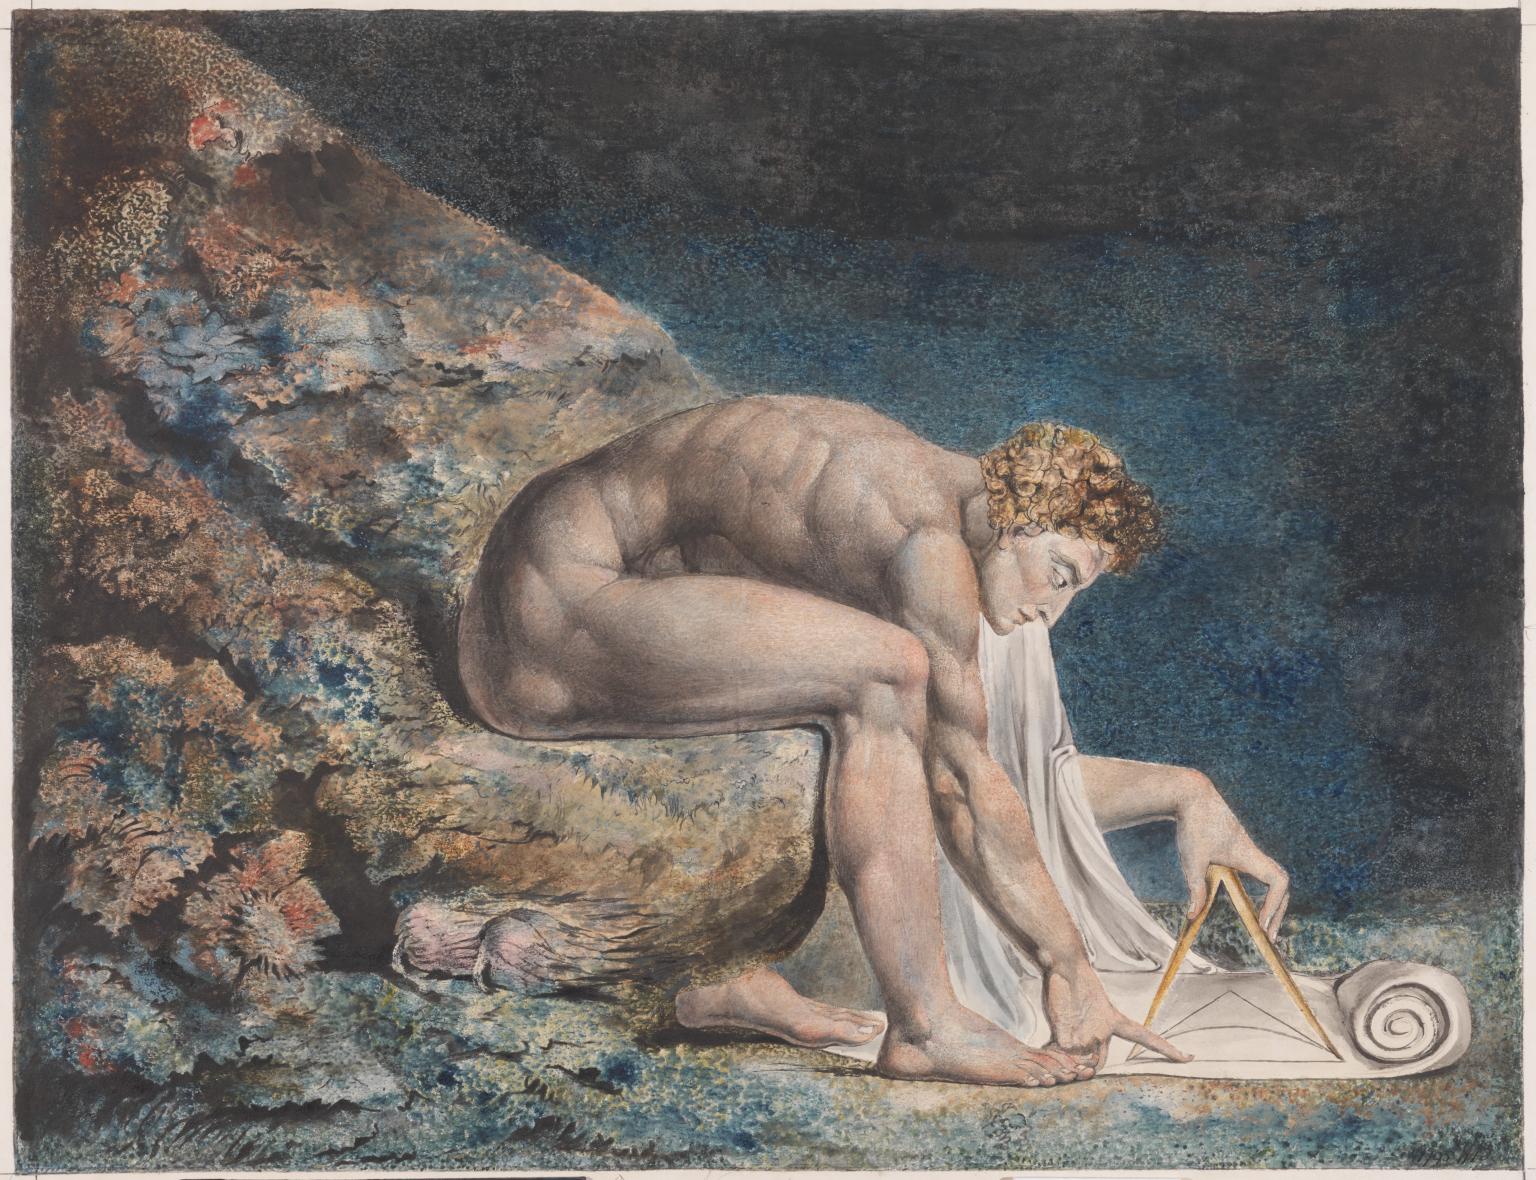 Њутн by William Blake - 1795–c.1805. - 46 × 60 cm 